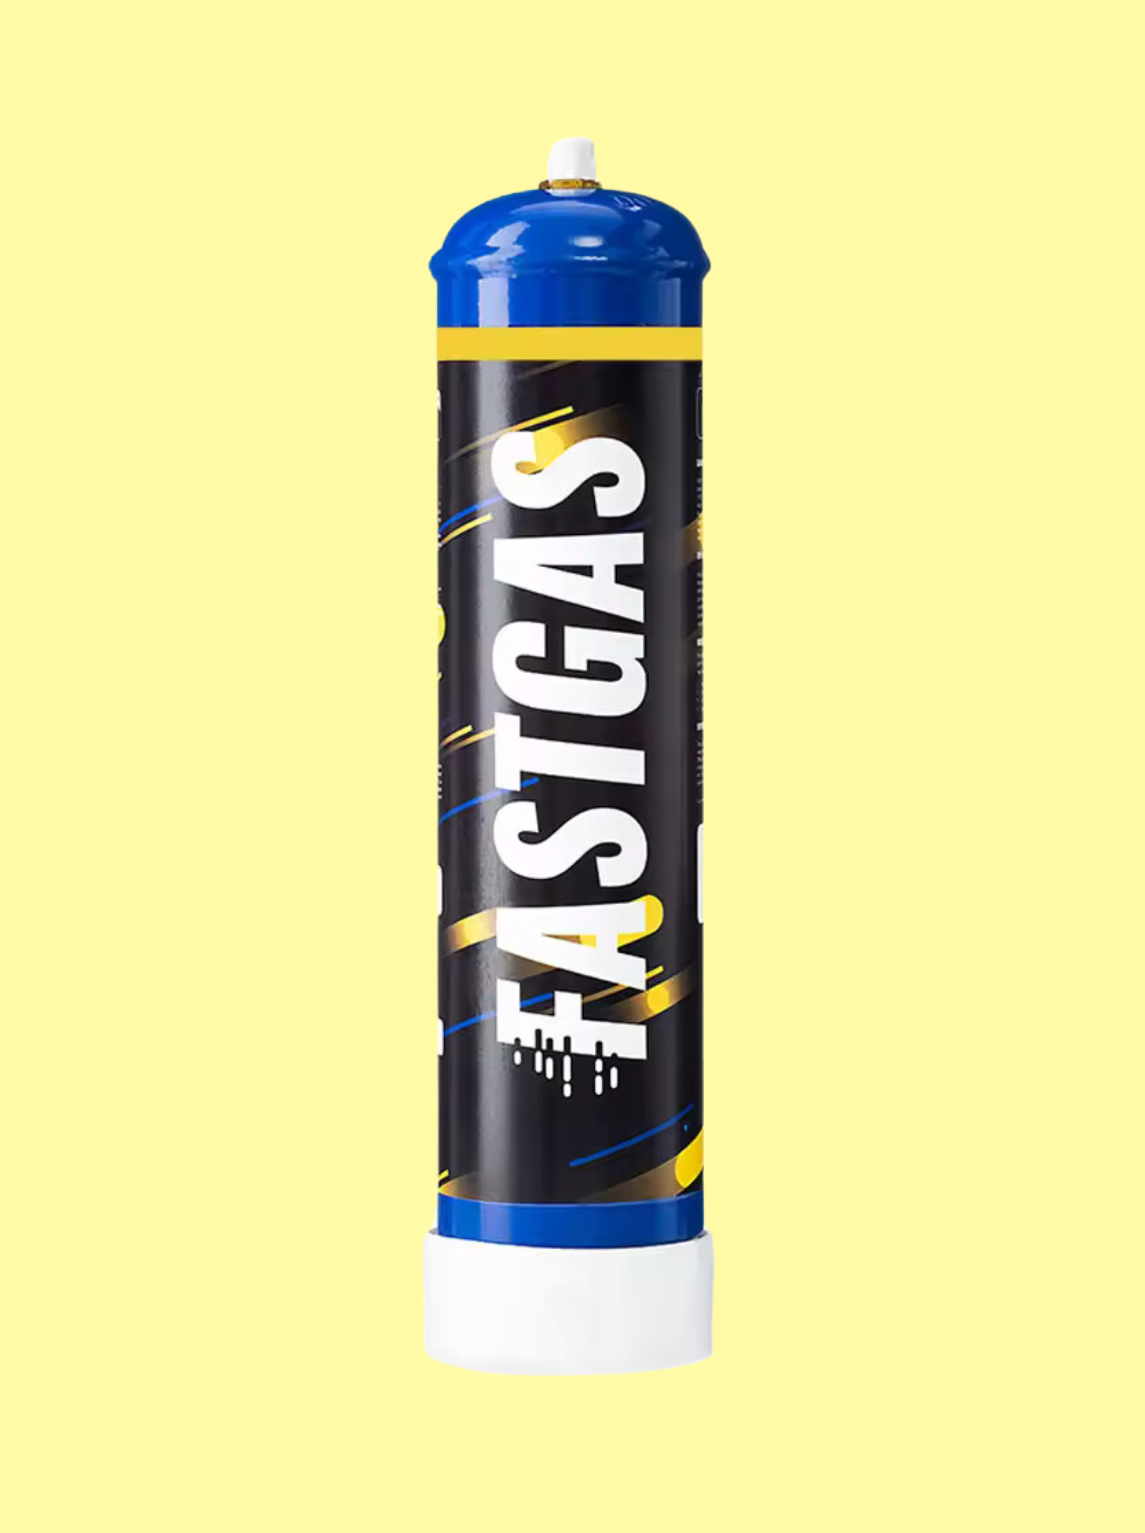 Die Gasflasche ist schwarz mit dem weißen Logo "Fastgas" 615g. Der Oberteil ist blau, der Unterteil weiß und die Flasche auch blau, gelb gestreift. Der Hintergrund ist hellgelb.